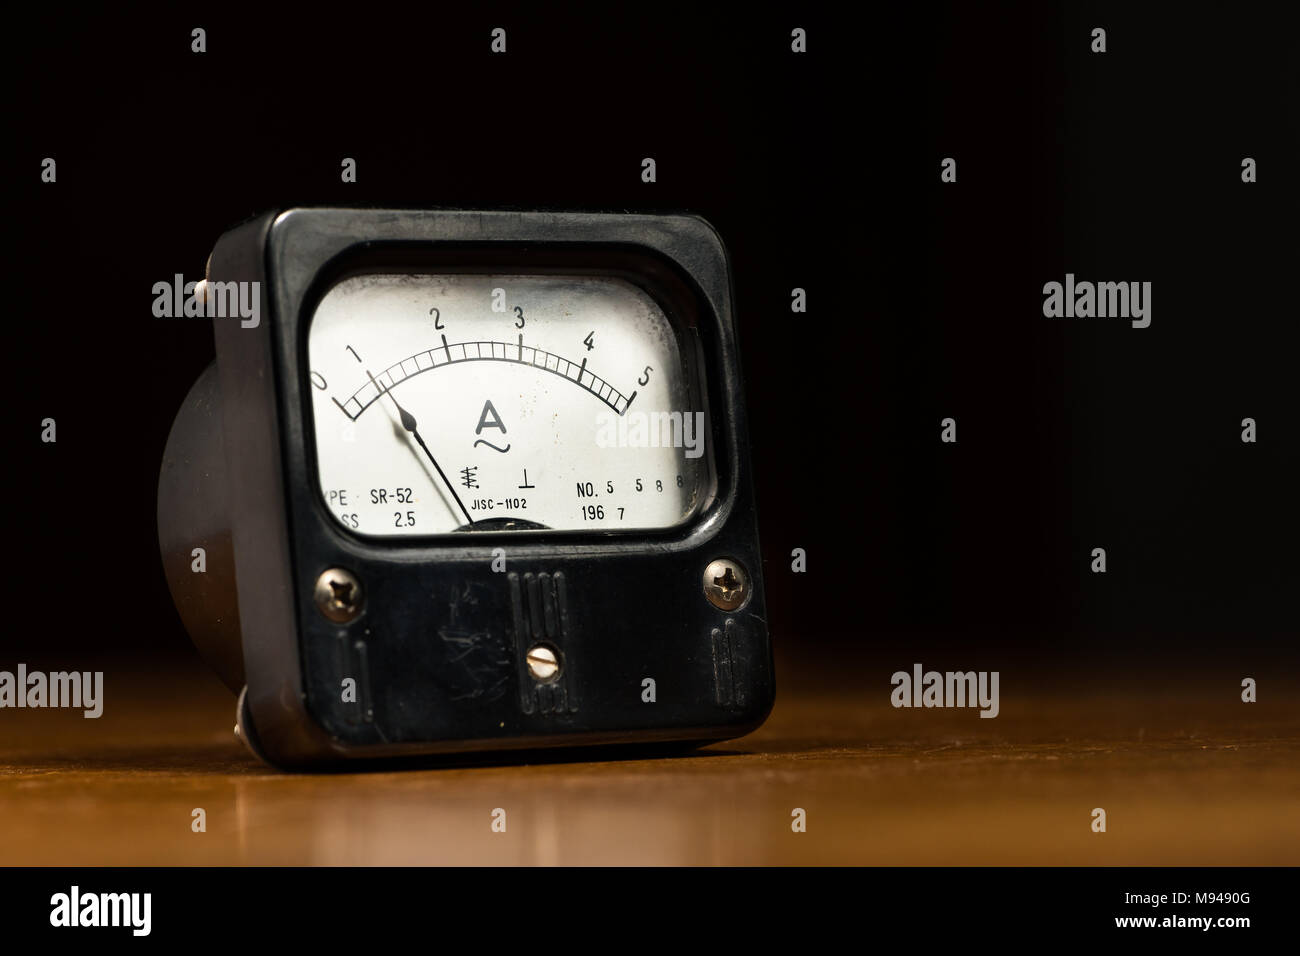 Libre d'un ancien ampèremètre analogique noir sur une table en bois Banque D'Images